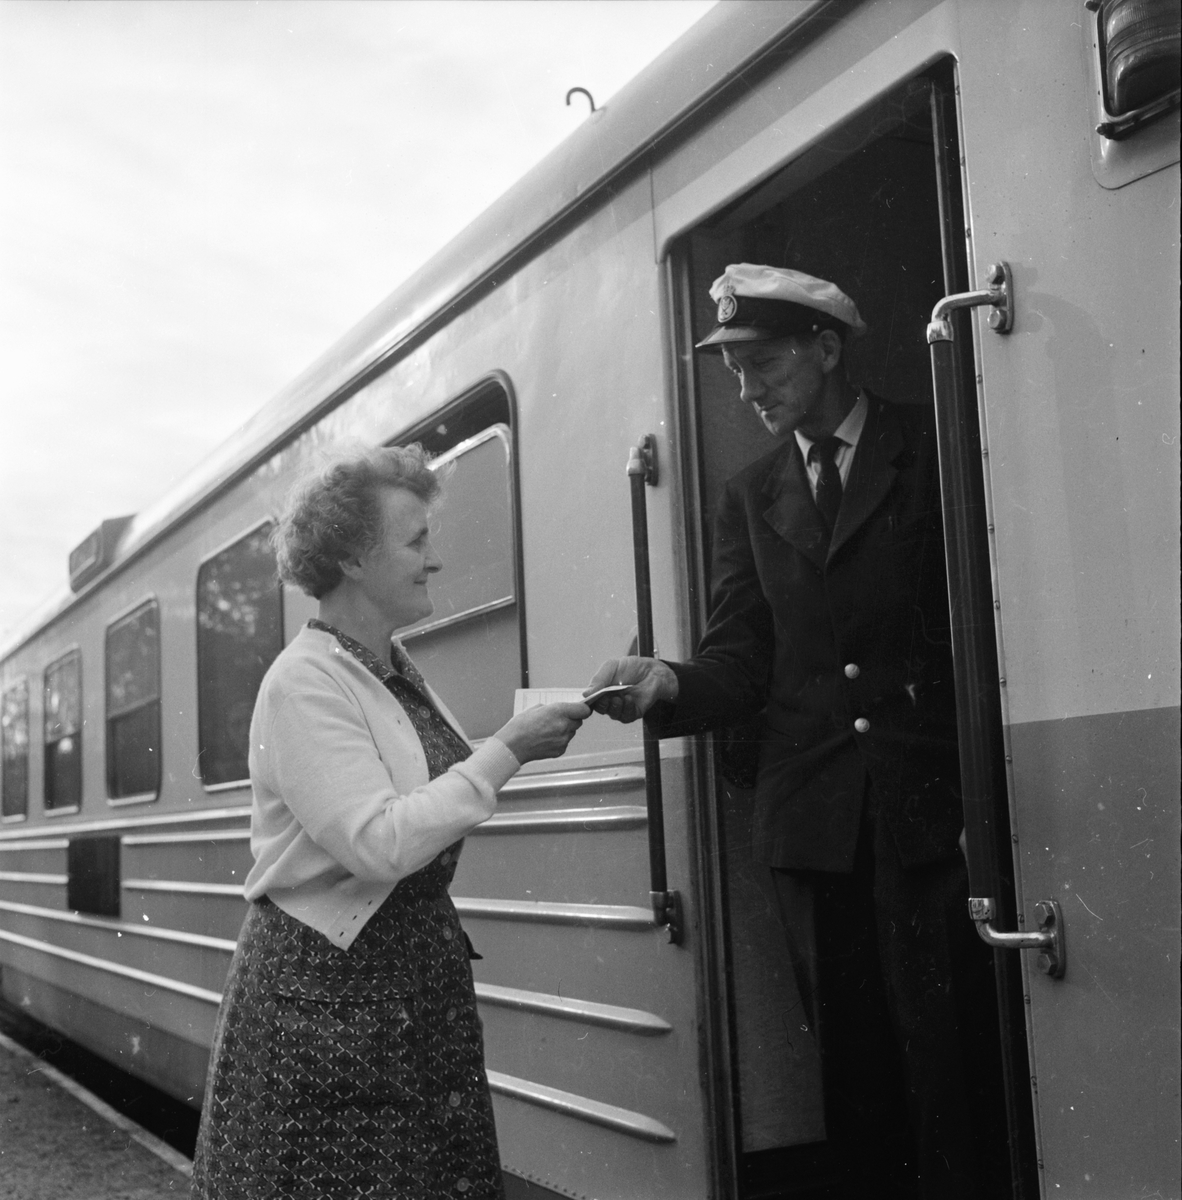 Freluga station dras in.
31/8 1961